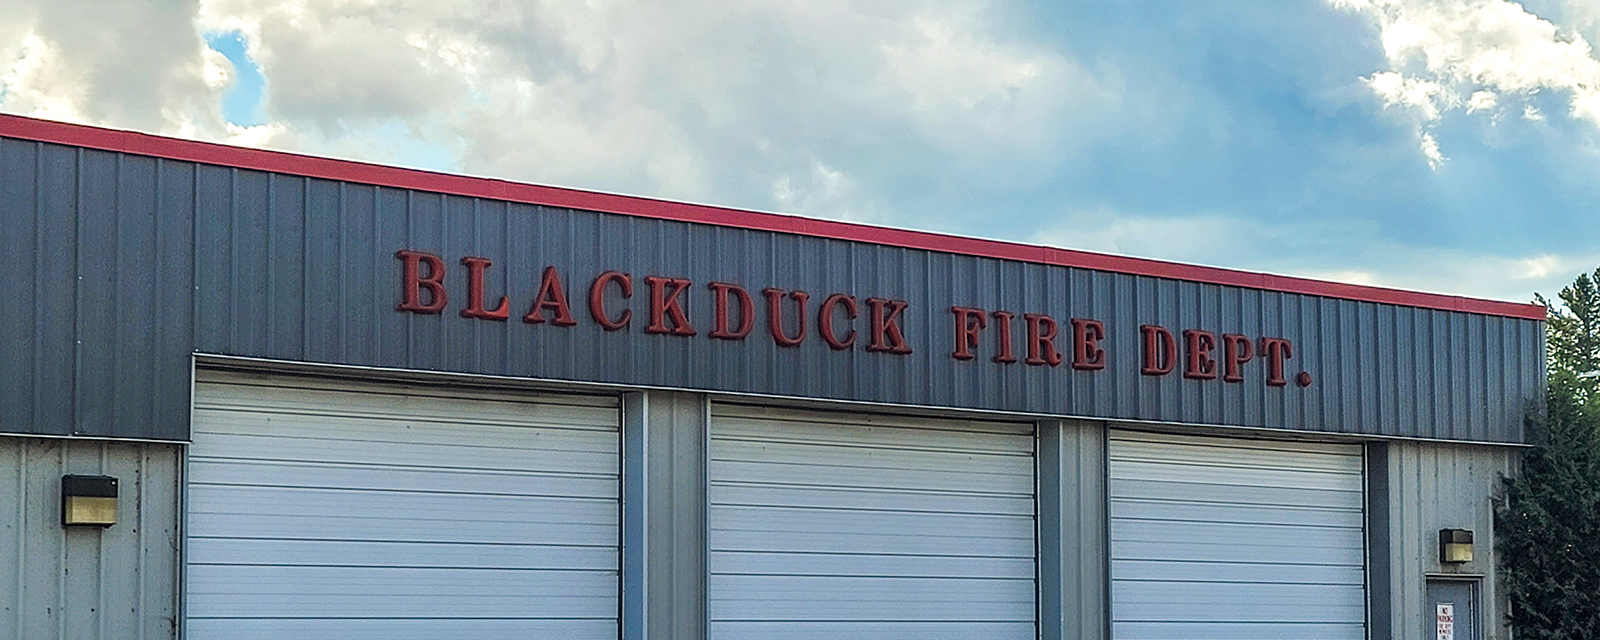 Blackduck Fire Department